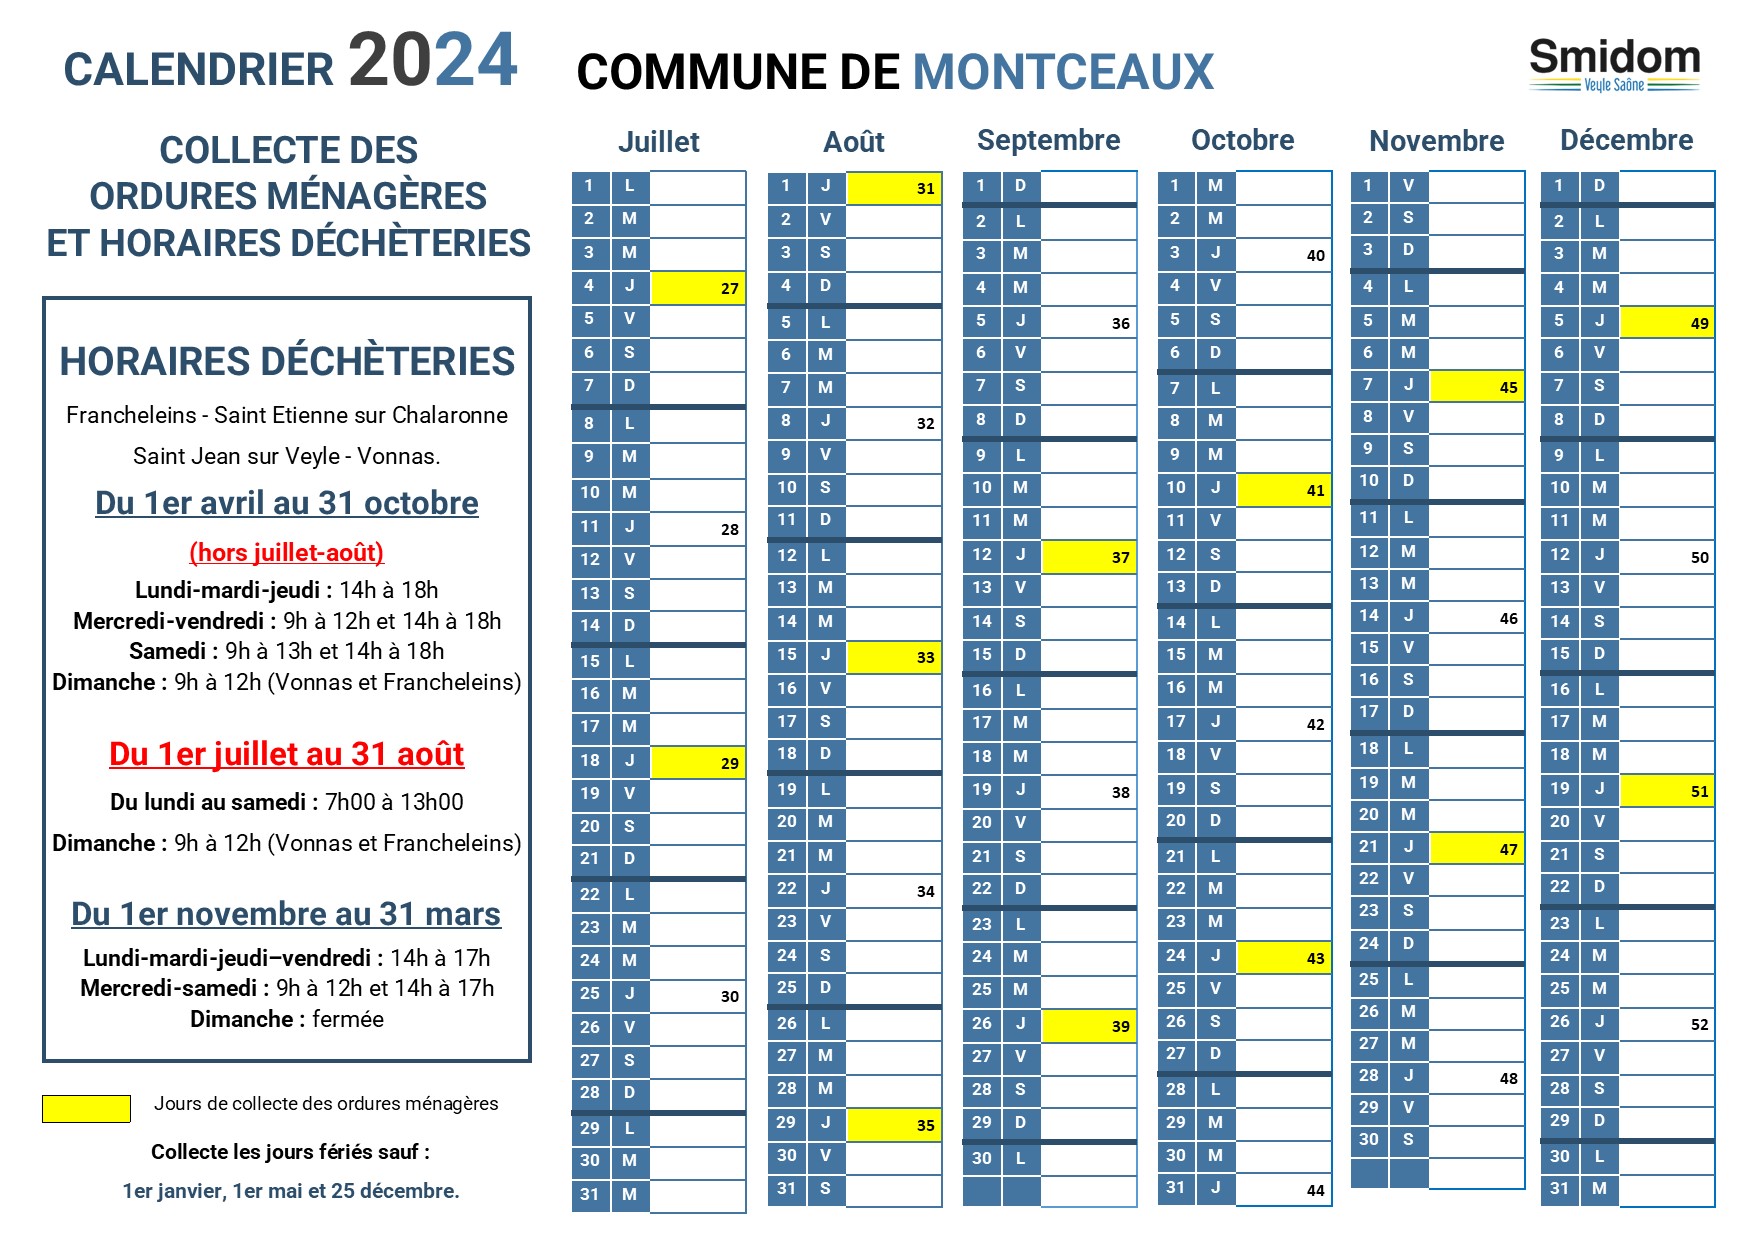 MONTCEAUX - Calendrier 2024 - 2.jpg